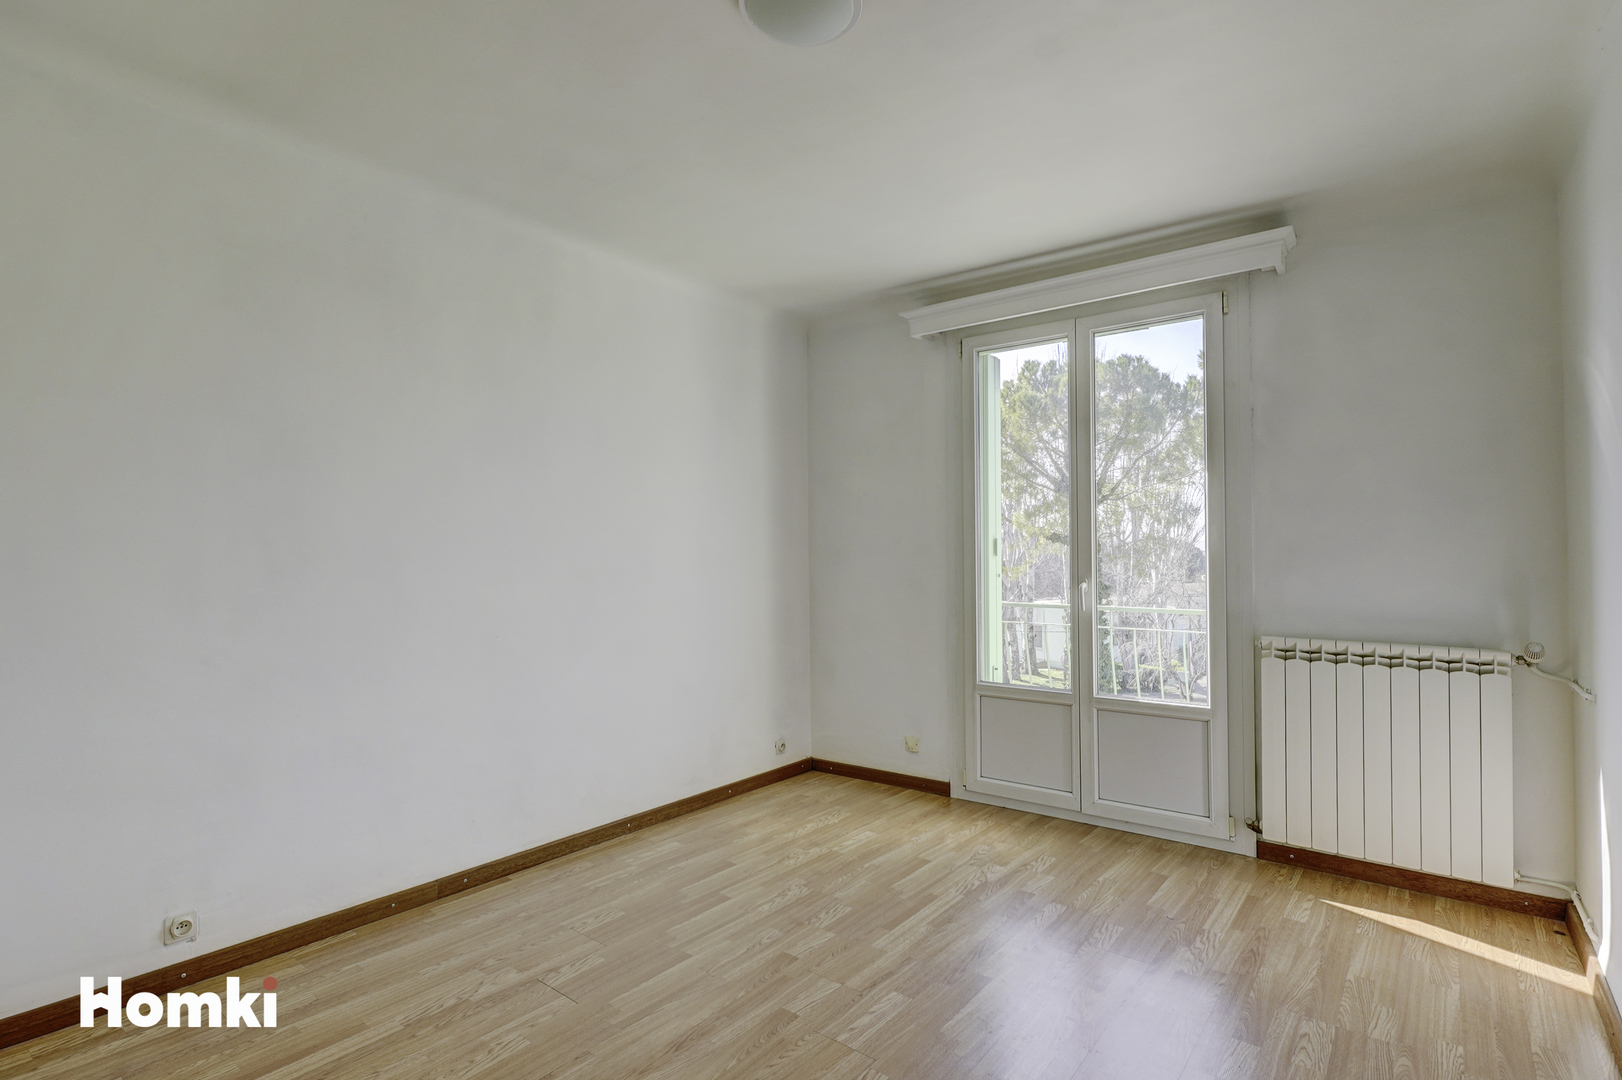 Homki - Vente Appartement  de 80.0 m² à Marignane 13700